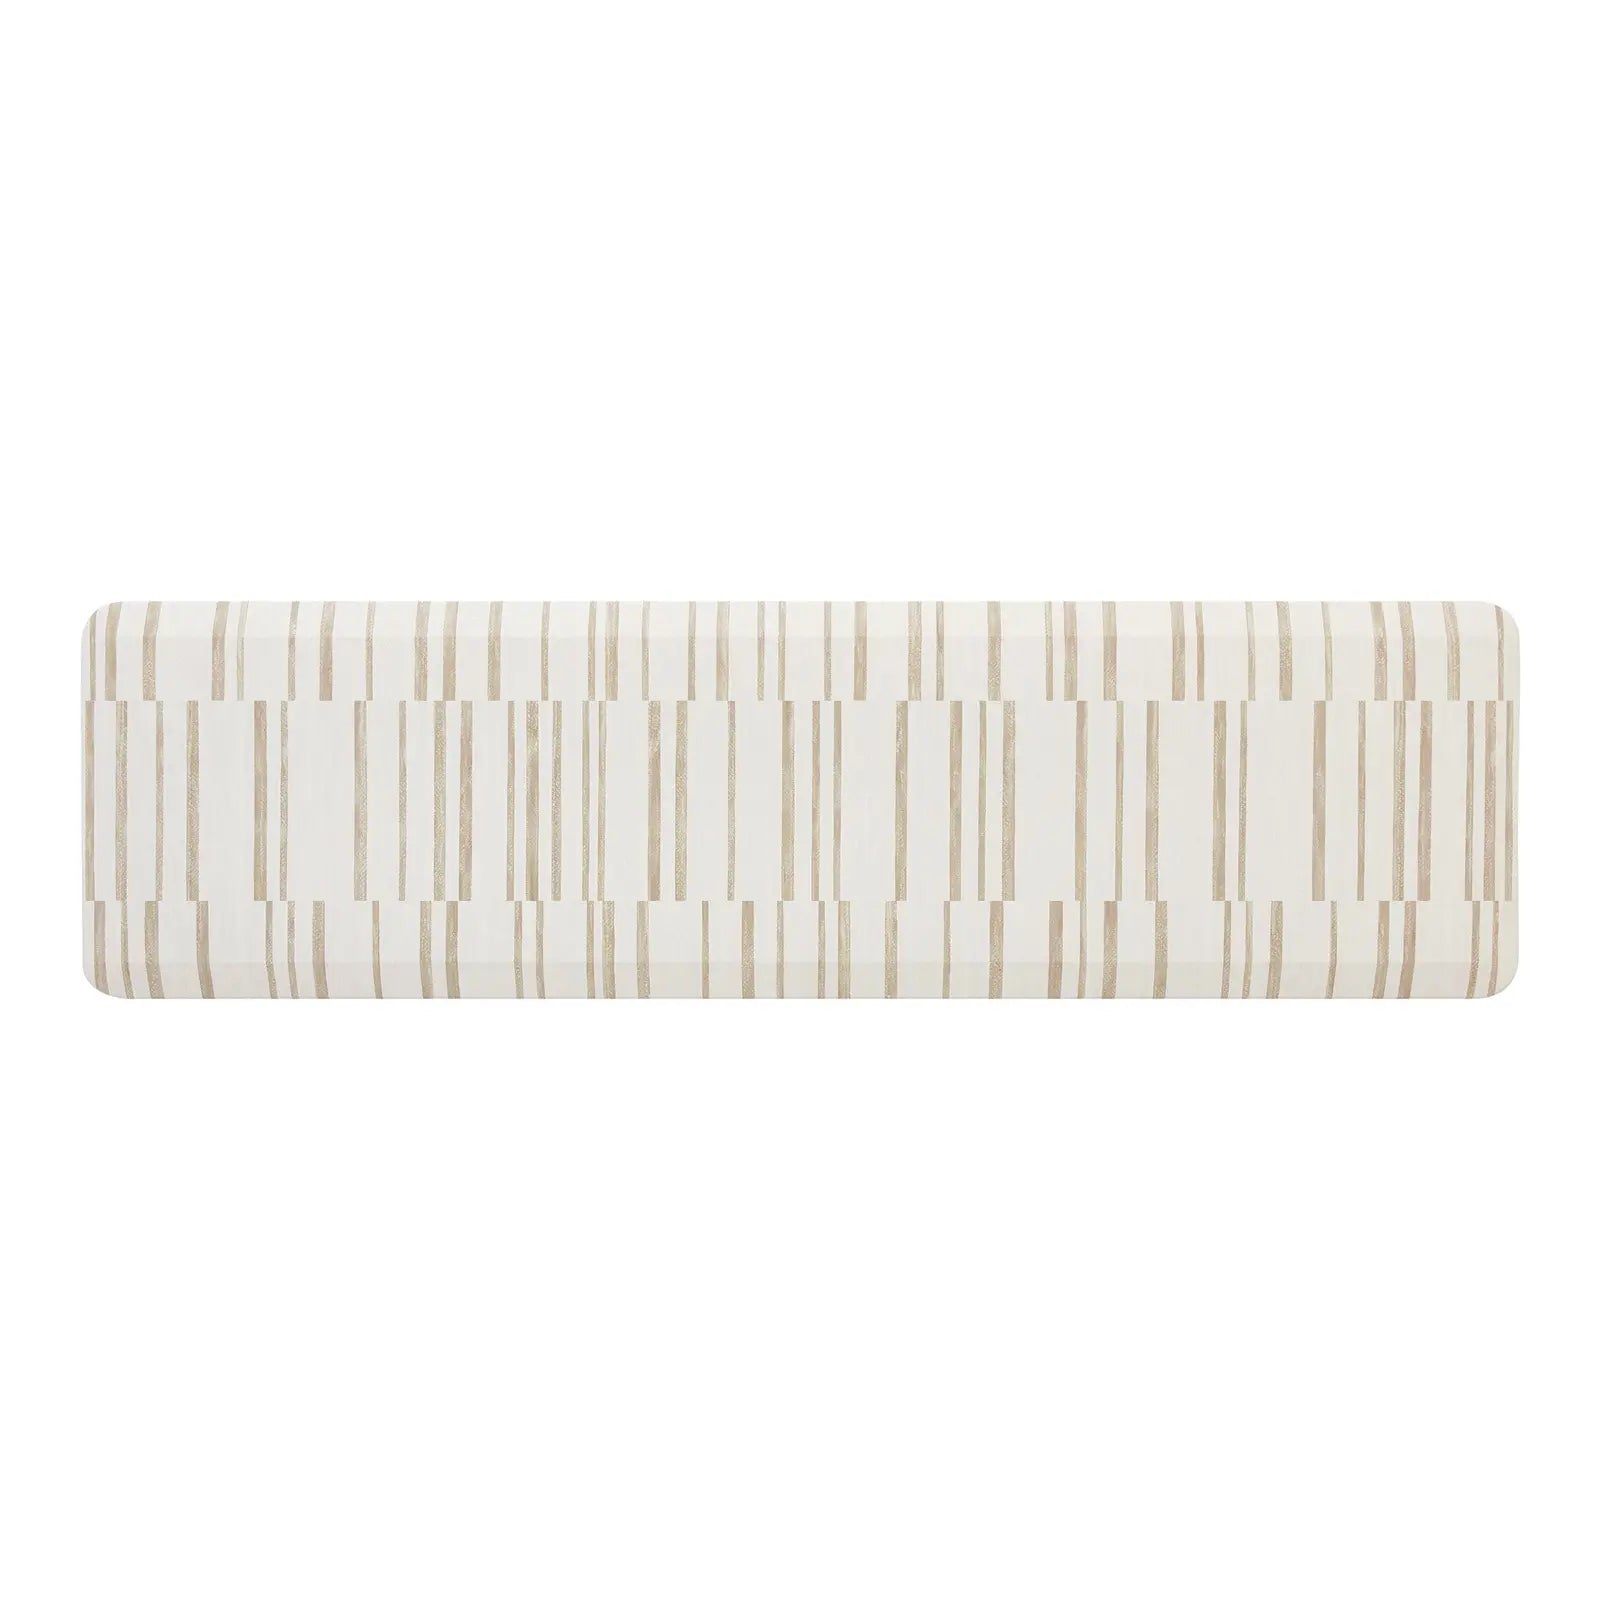 Beige inverted stripe kitchen mat shown in size 22x72